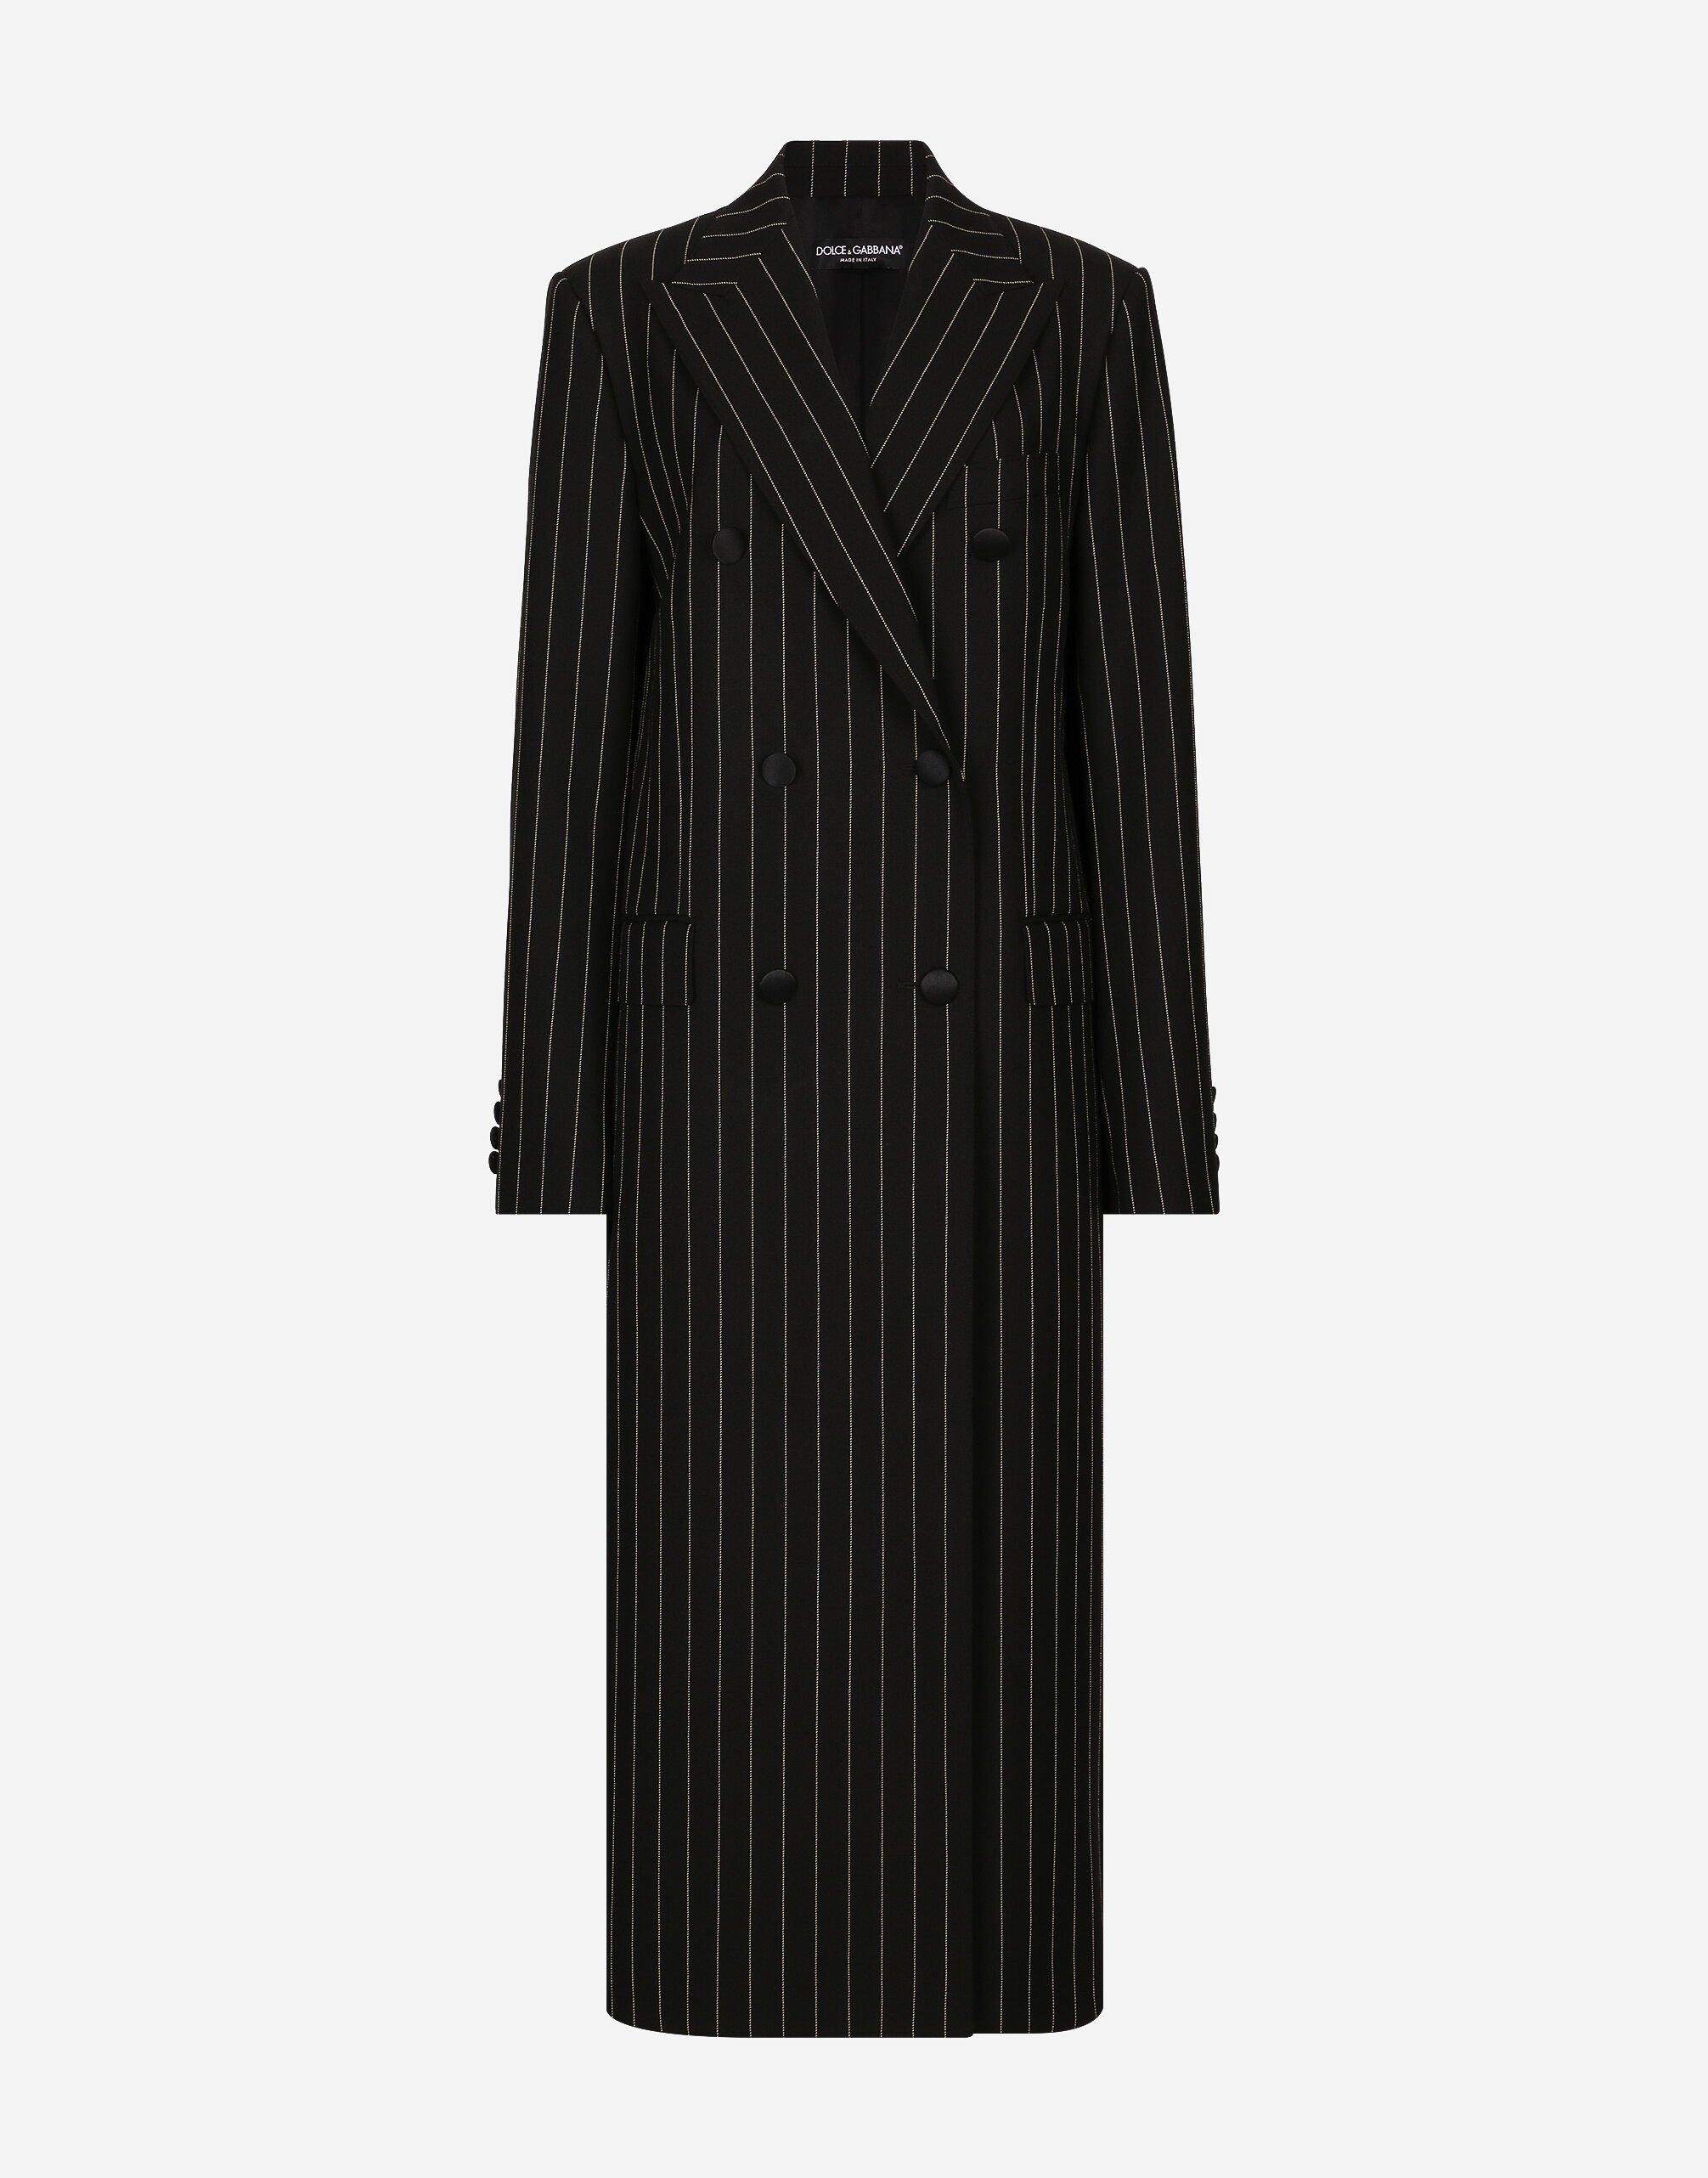 Dolce & Gabbana Manteau croisé en toile de laine à rayures tennis Noir F0D1OTFUMG9